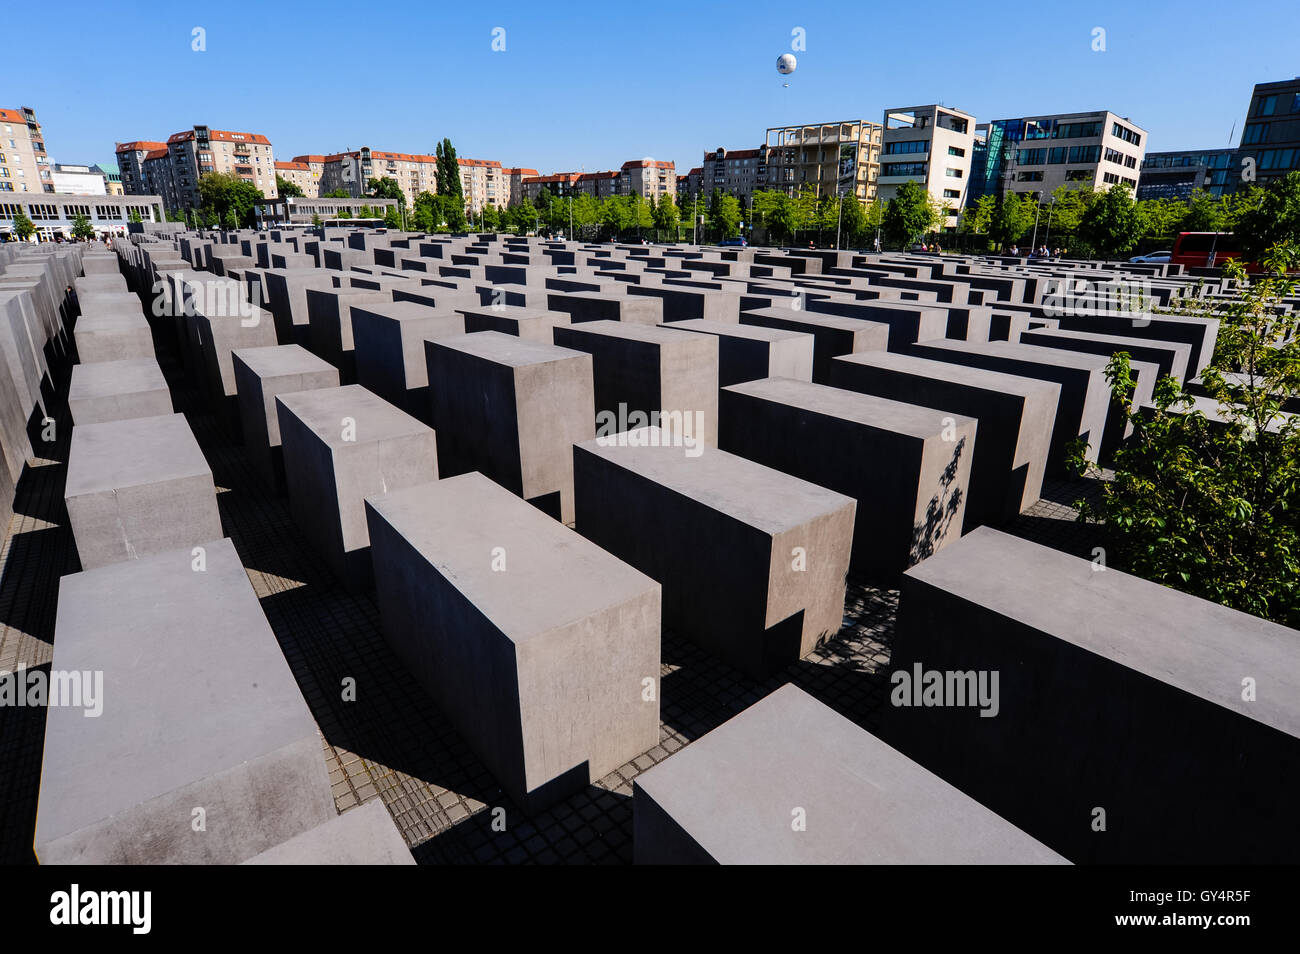 Berlin, Allemagne. Mémorial aux Juifs assassinés d'Europe, également connu sous le nom de Mémorial de l'Holocauste. Ouvert en 2005. Banque D'Images